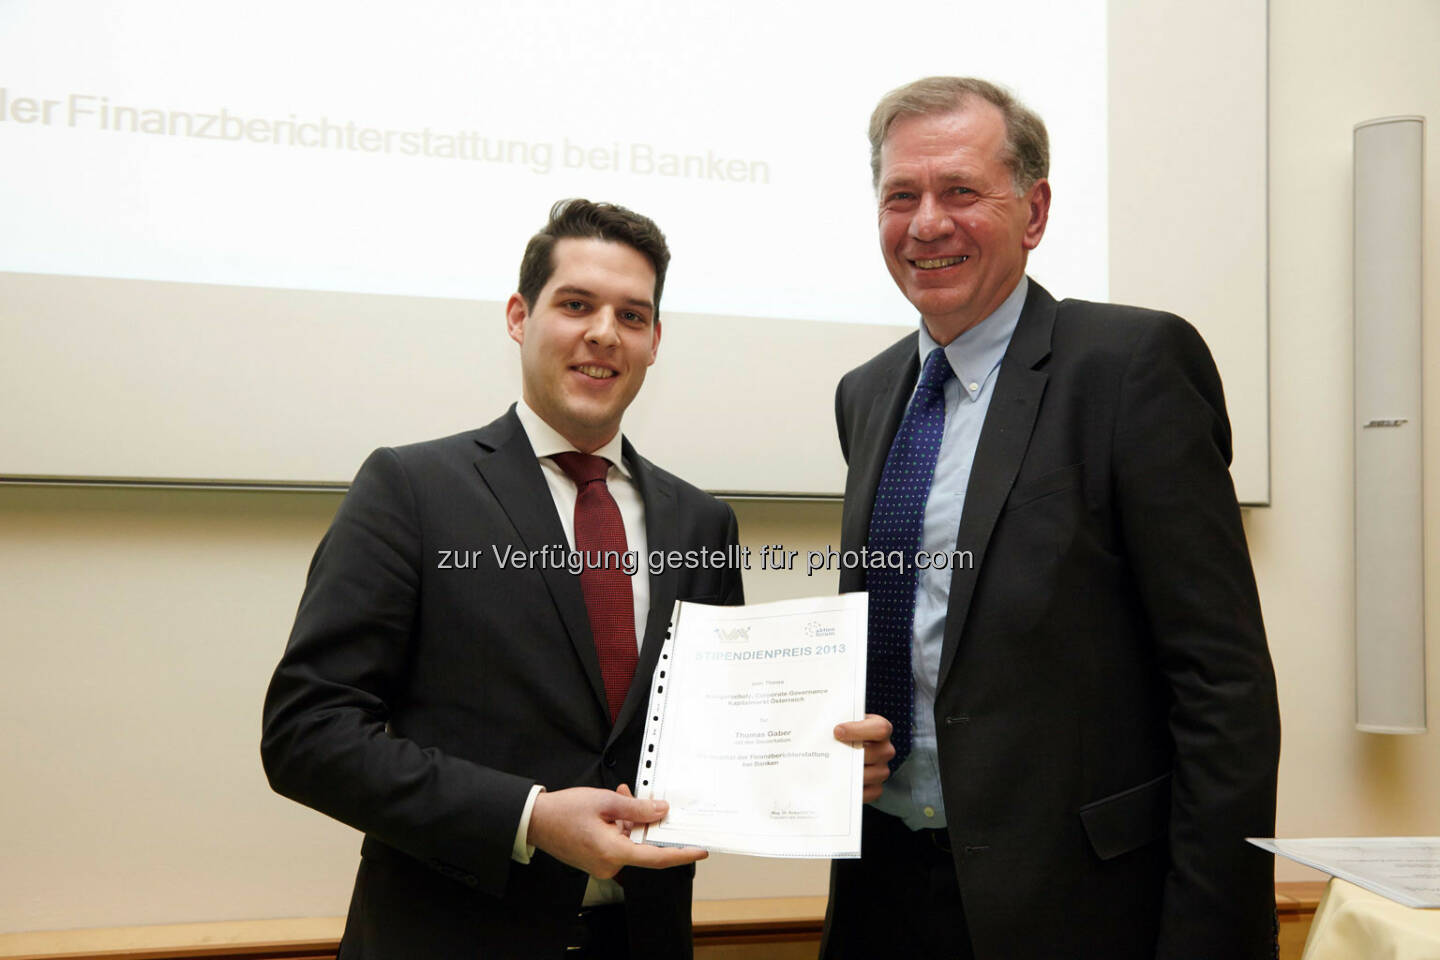 
Thomas Gaber - Anerkennungspreis für die Dissertation
„Die Qualität der Finanzberichterstattung bei Banken“  im Wert von 1000 Euro
